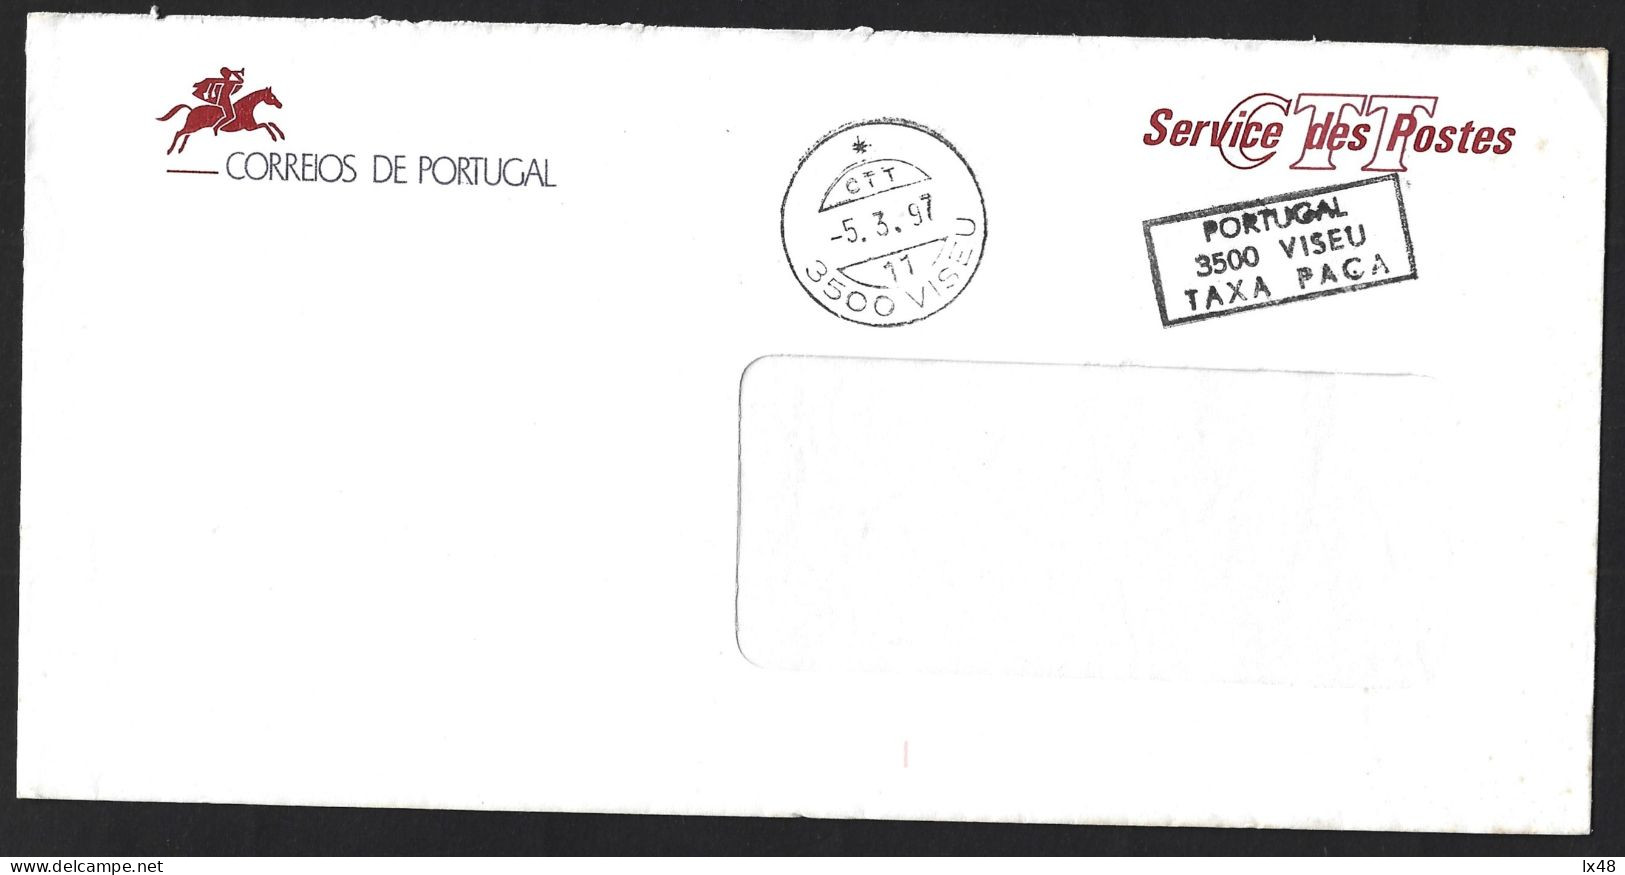 Carta Dos Correios Com Marcas De 'Taxa Paga, Viseu'. Rare. Letter From The Post Office Marked 'Tax Paid, Viseu'. Rare. - Cartas & Documentos